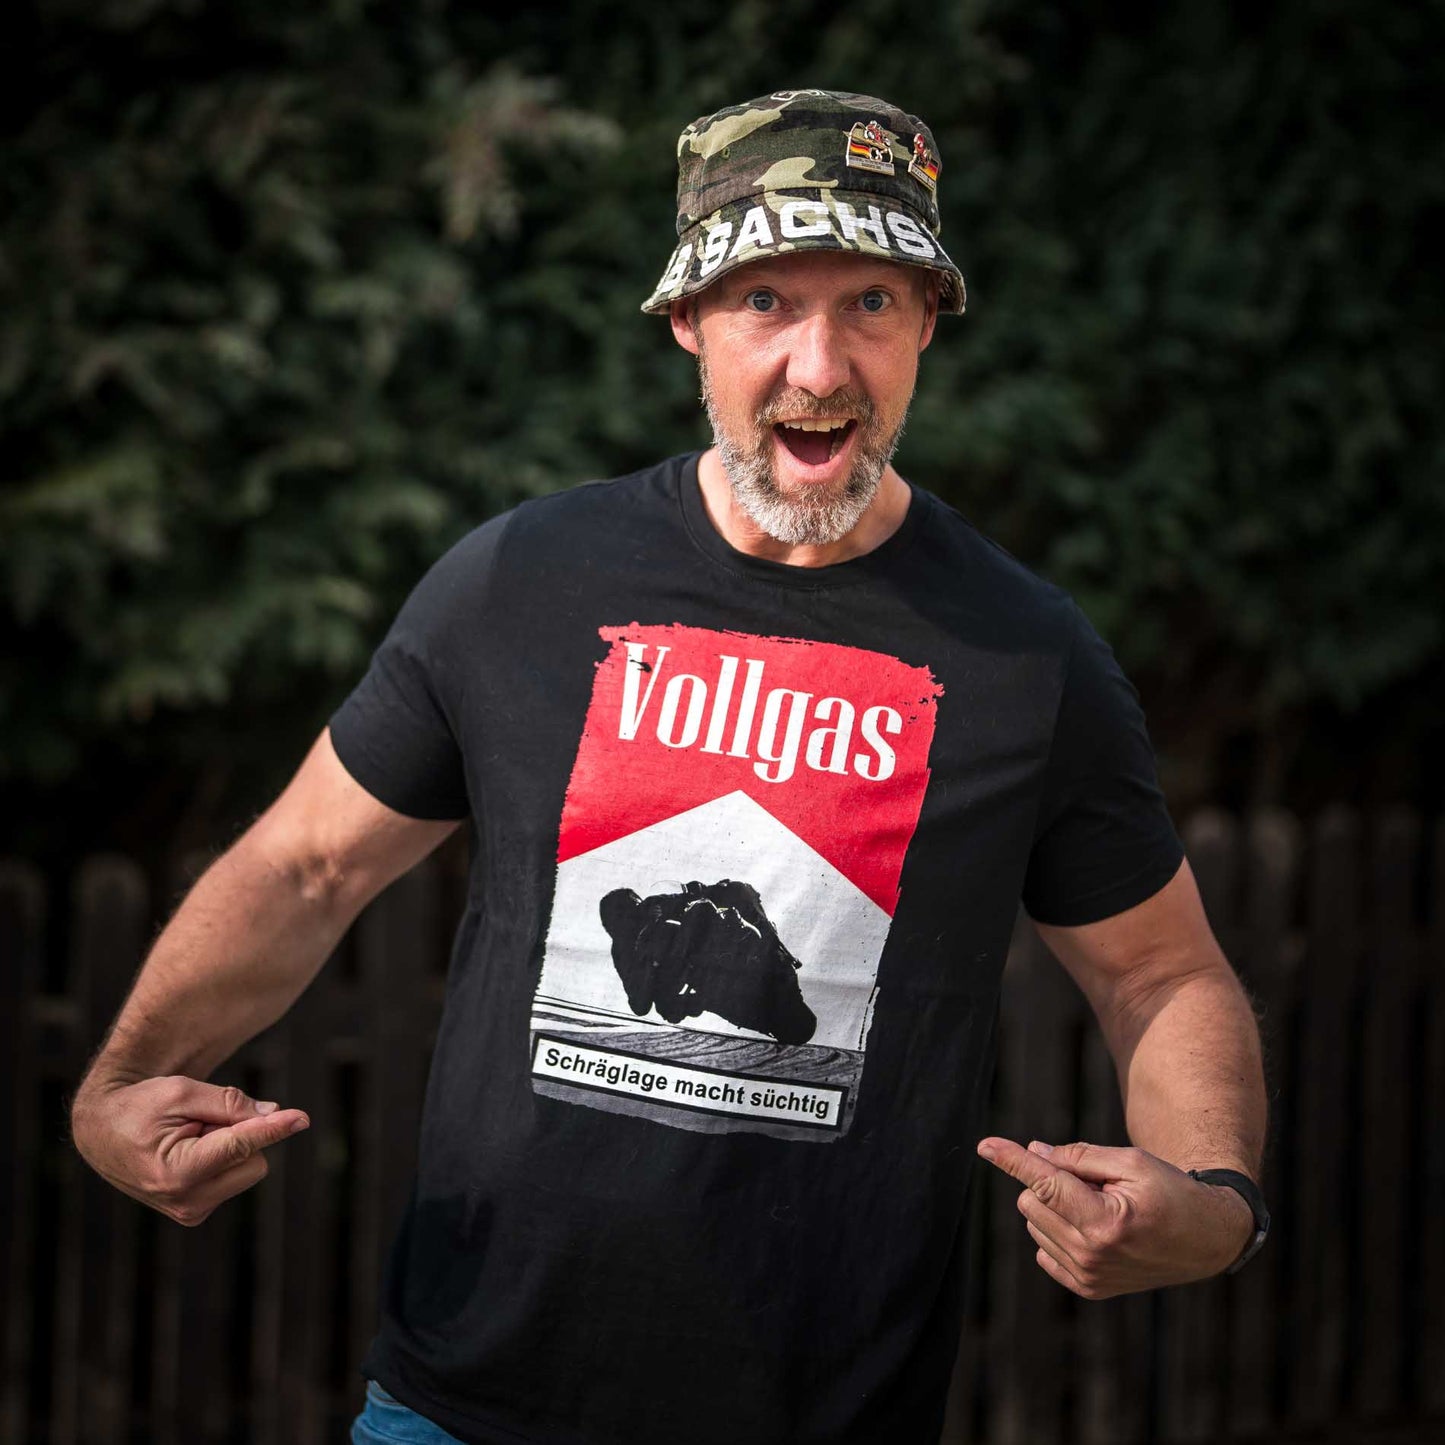 VOLLGAS SUCHT - Premium Shirt